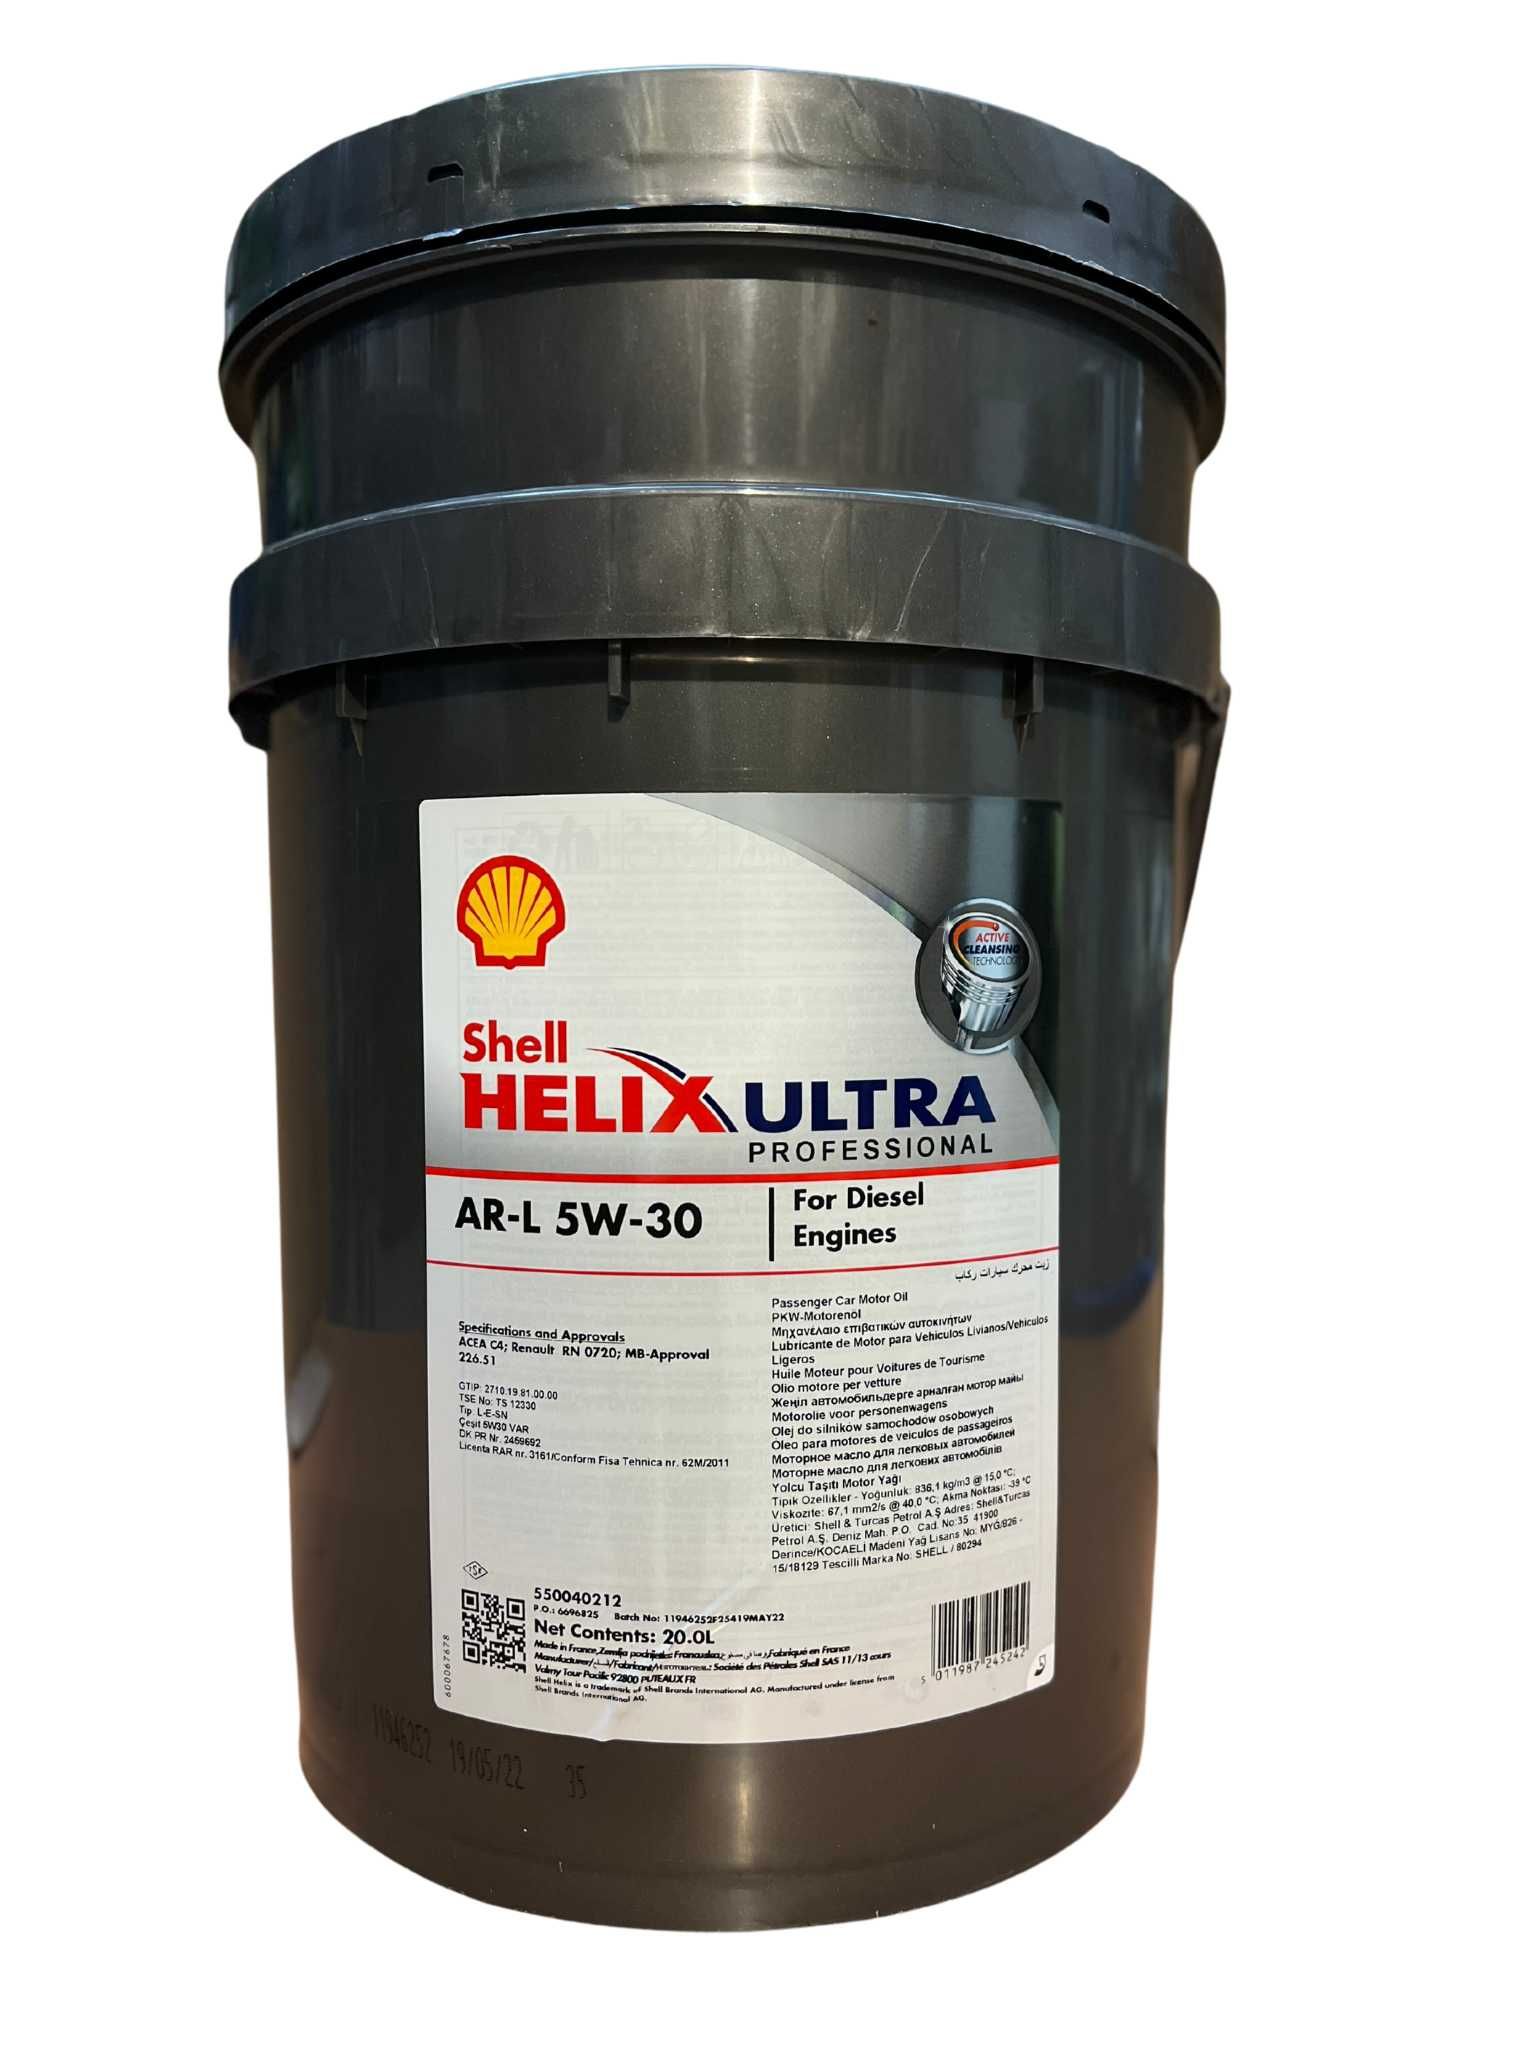 Shell Helix Ultra Professional AR-L 5W-30 20 Liter